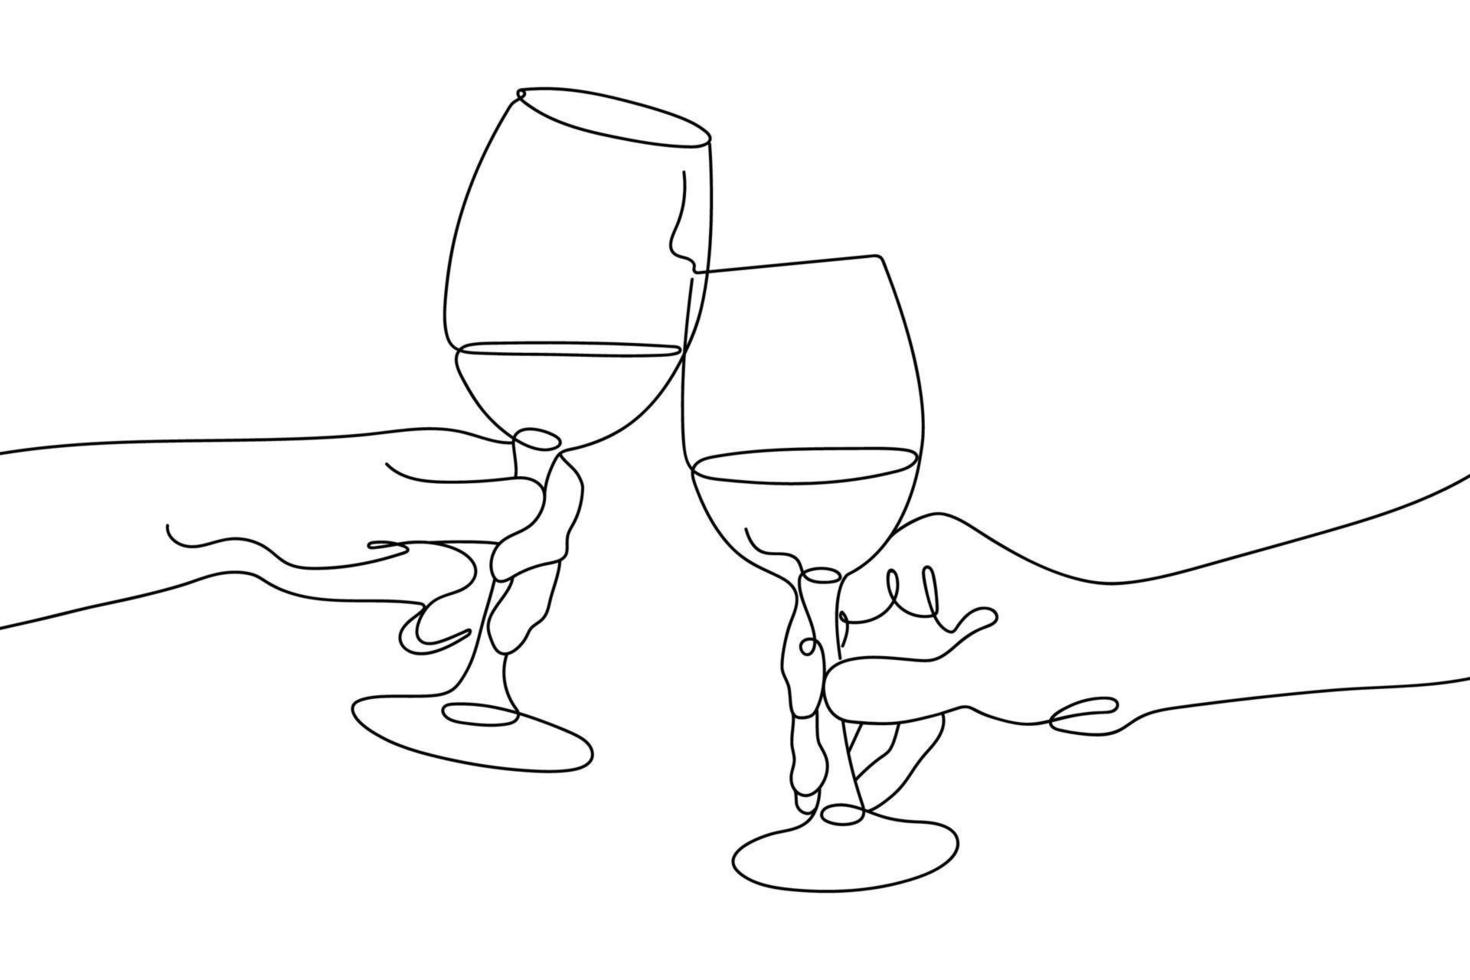 disegno continuo a linea singola di bicchieri o bevande. la gente fa tintinnare i bicchieri di vino. concetto lineare minimalista di celebrare e tifare. illustrazione vettoriale. vettore